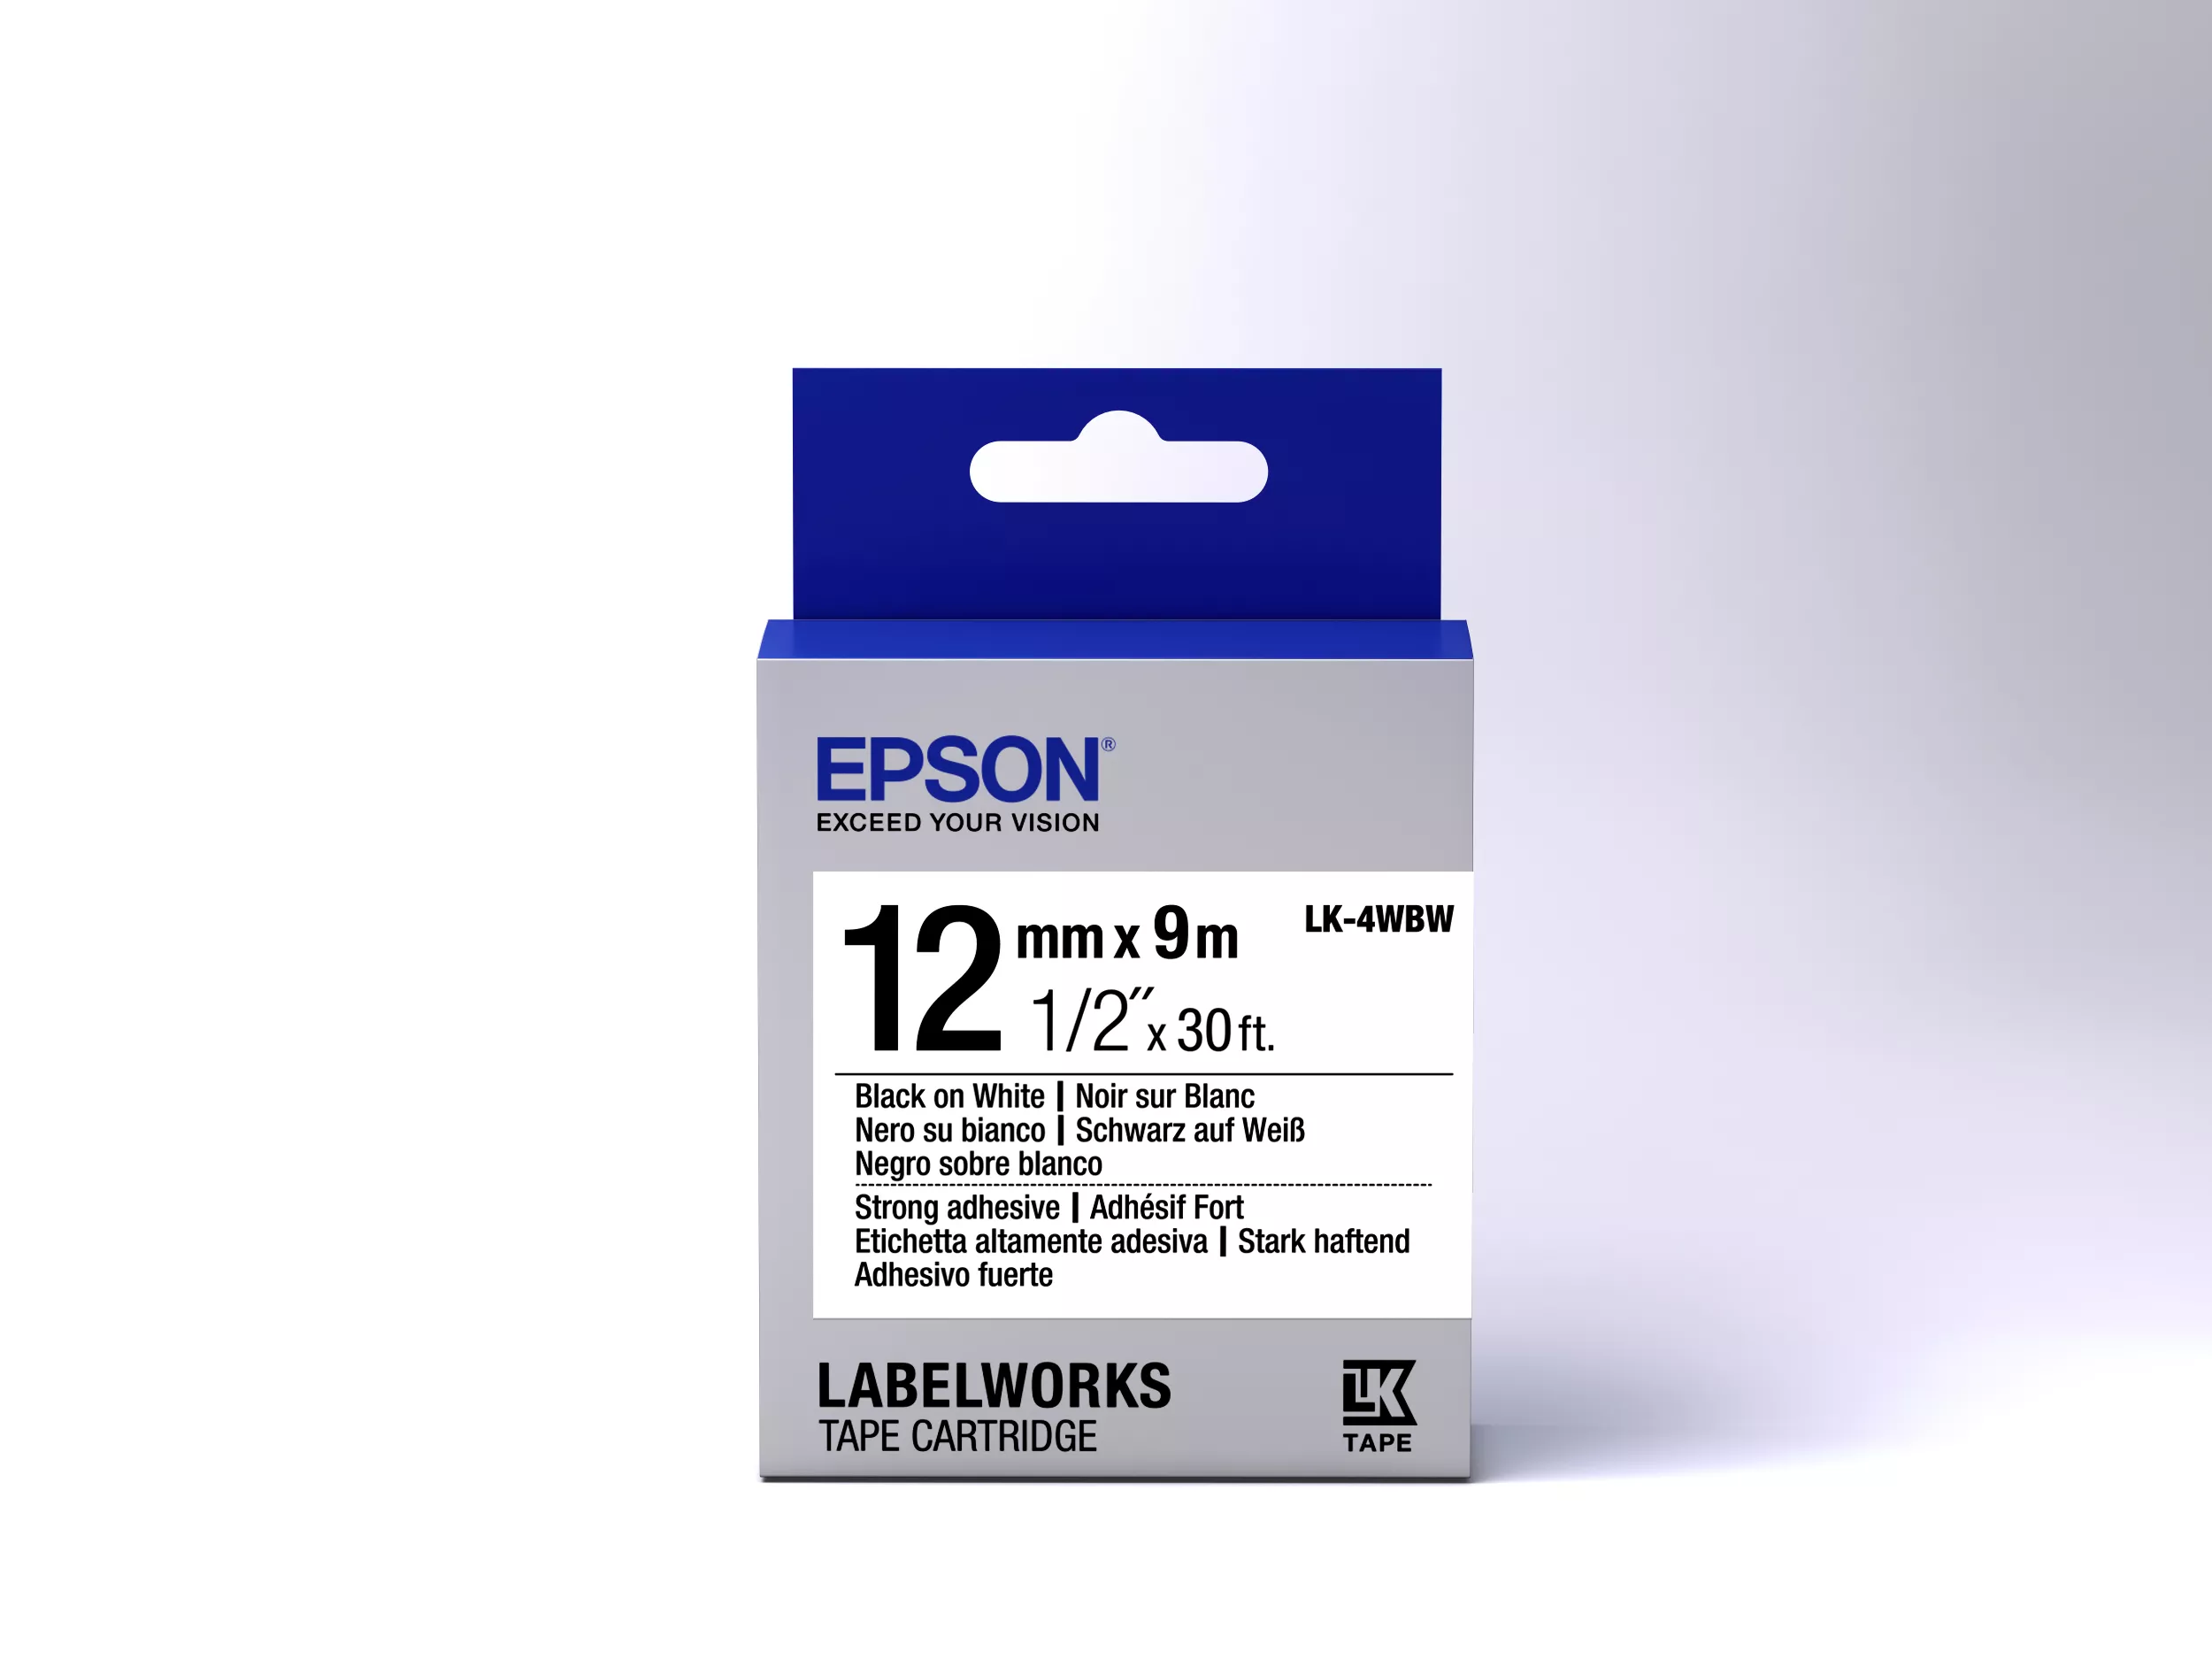 Vente EPSON LK4WBW forte Adh. Noir sur blanc ruban Epson au meilleur prix - visuel 2